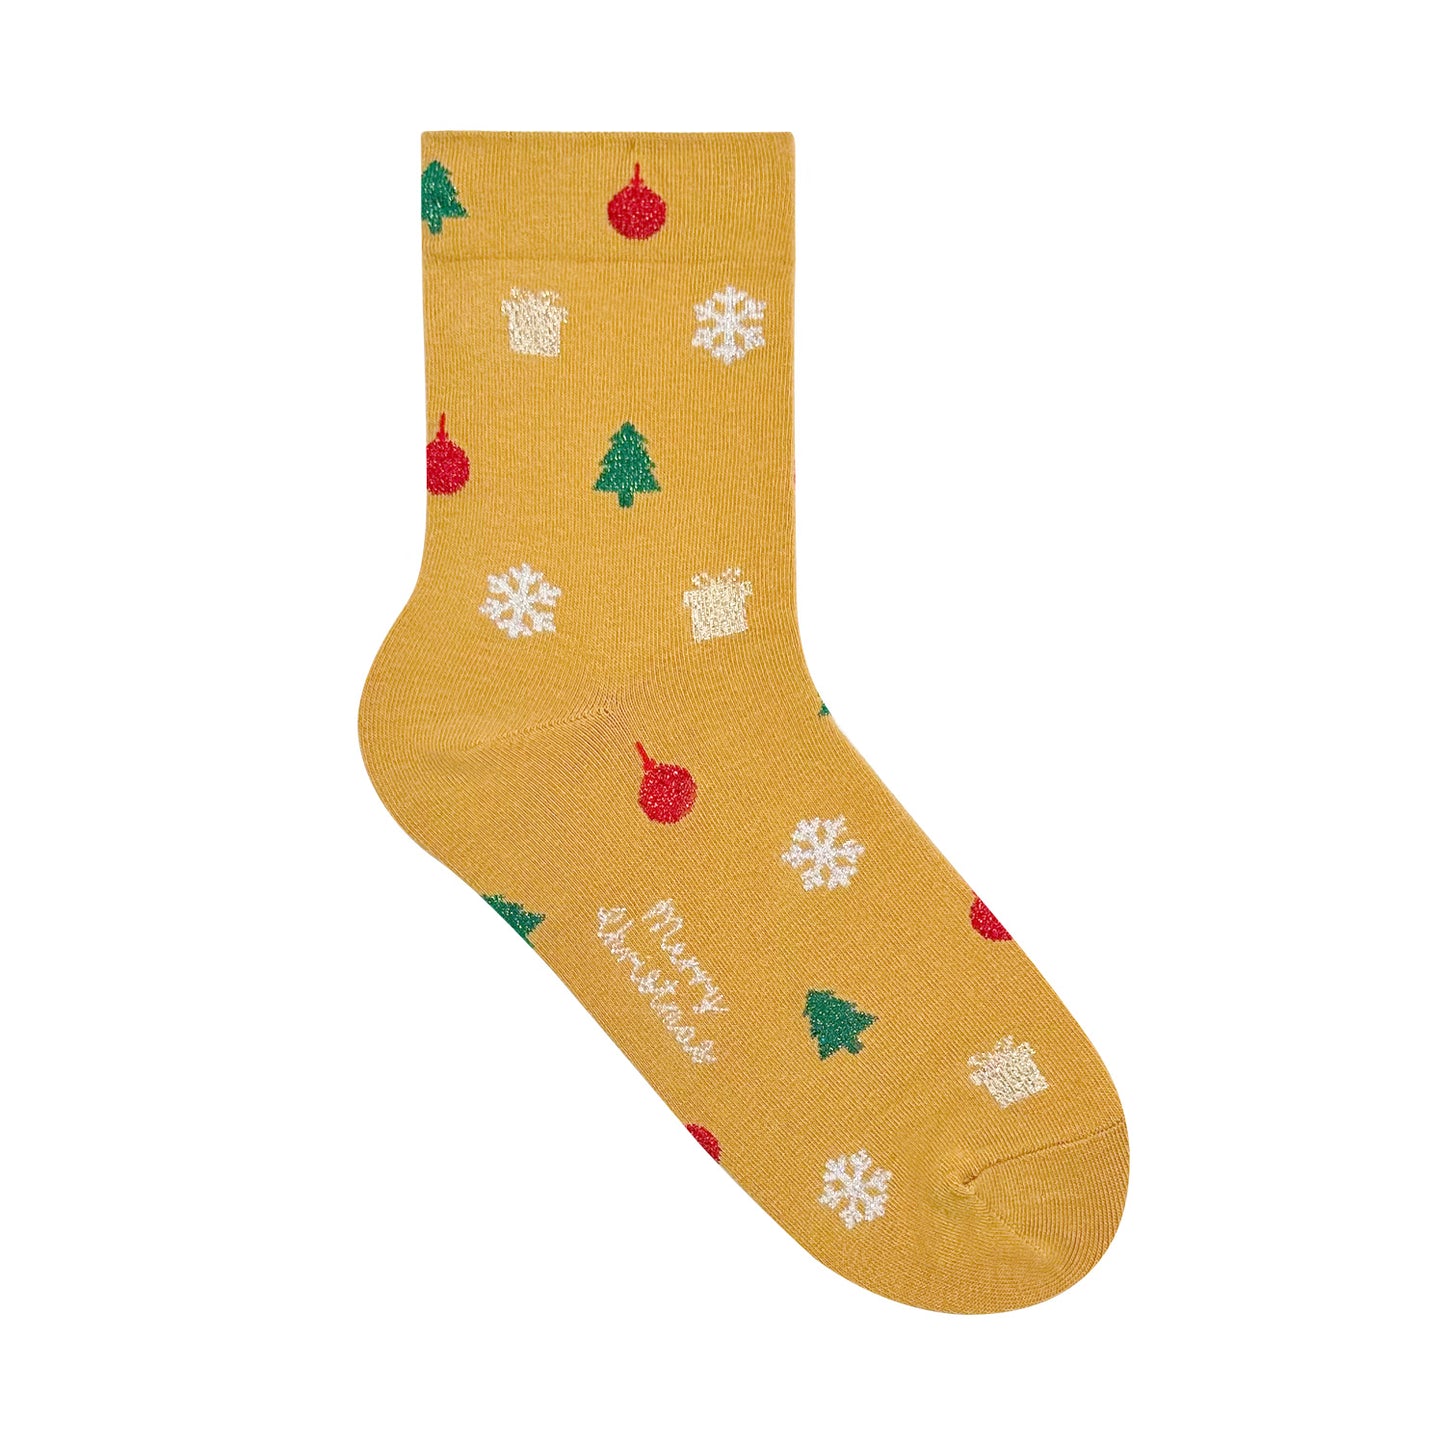 Women's Crew Christmas Gift Socks